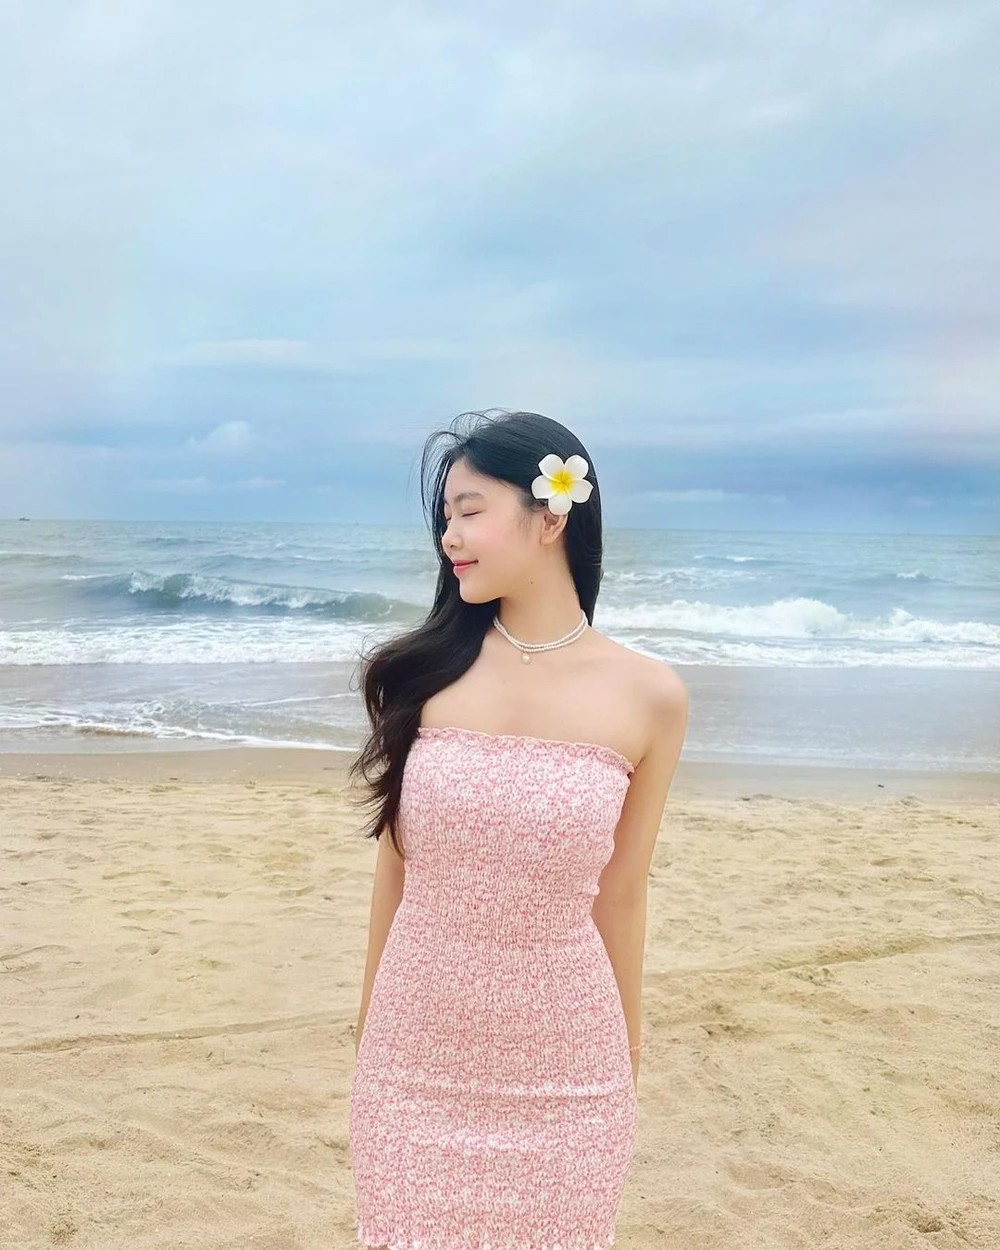 Gu mặc đi biển thu hút nhất từ trước đến nay của con gái Quyền Linh, Lưu Thiên Hương - 4